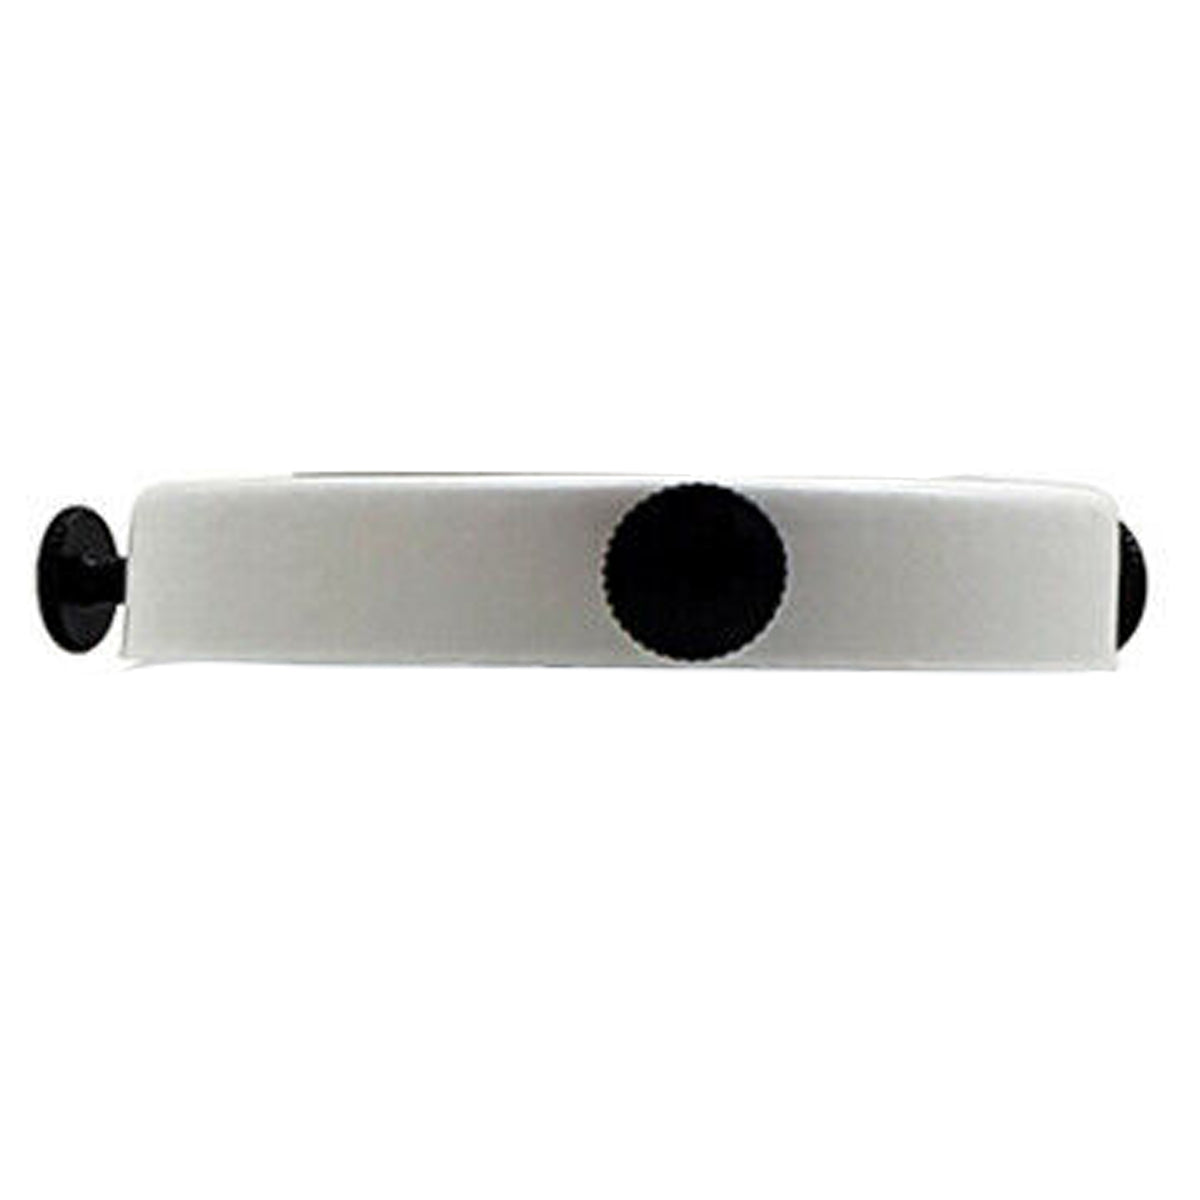 White Shade Ring With Black screw Lamp Shade Cap for Pendant Light Socket Holder Fitting~1039 - LEDSone UK Ltd